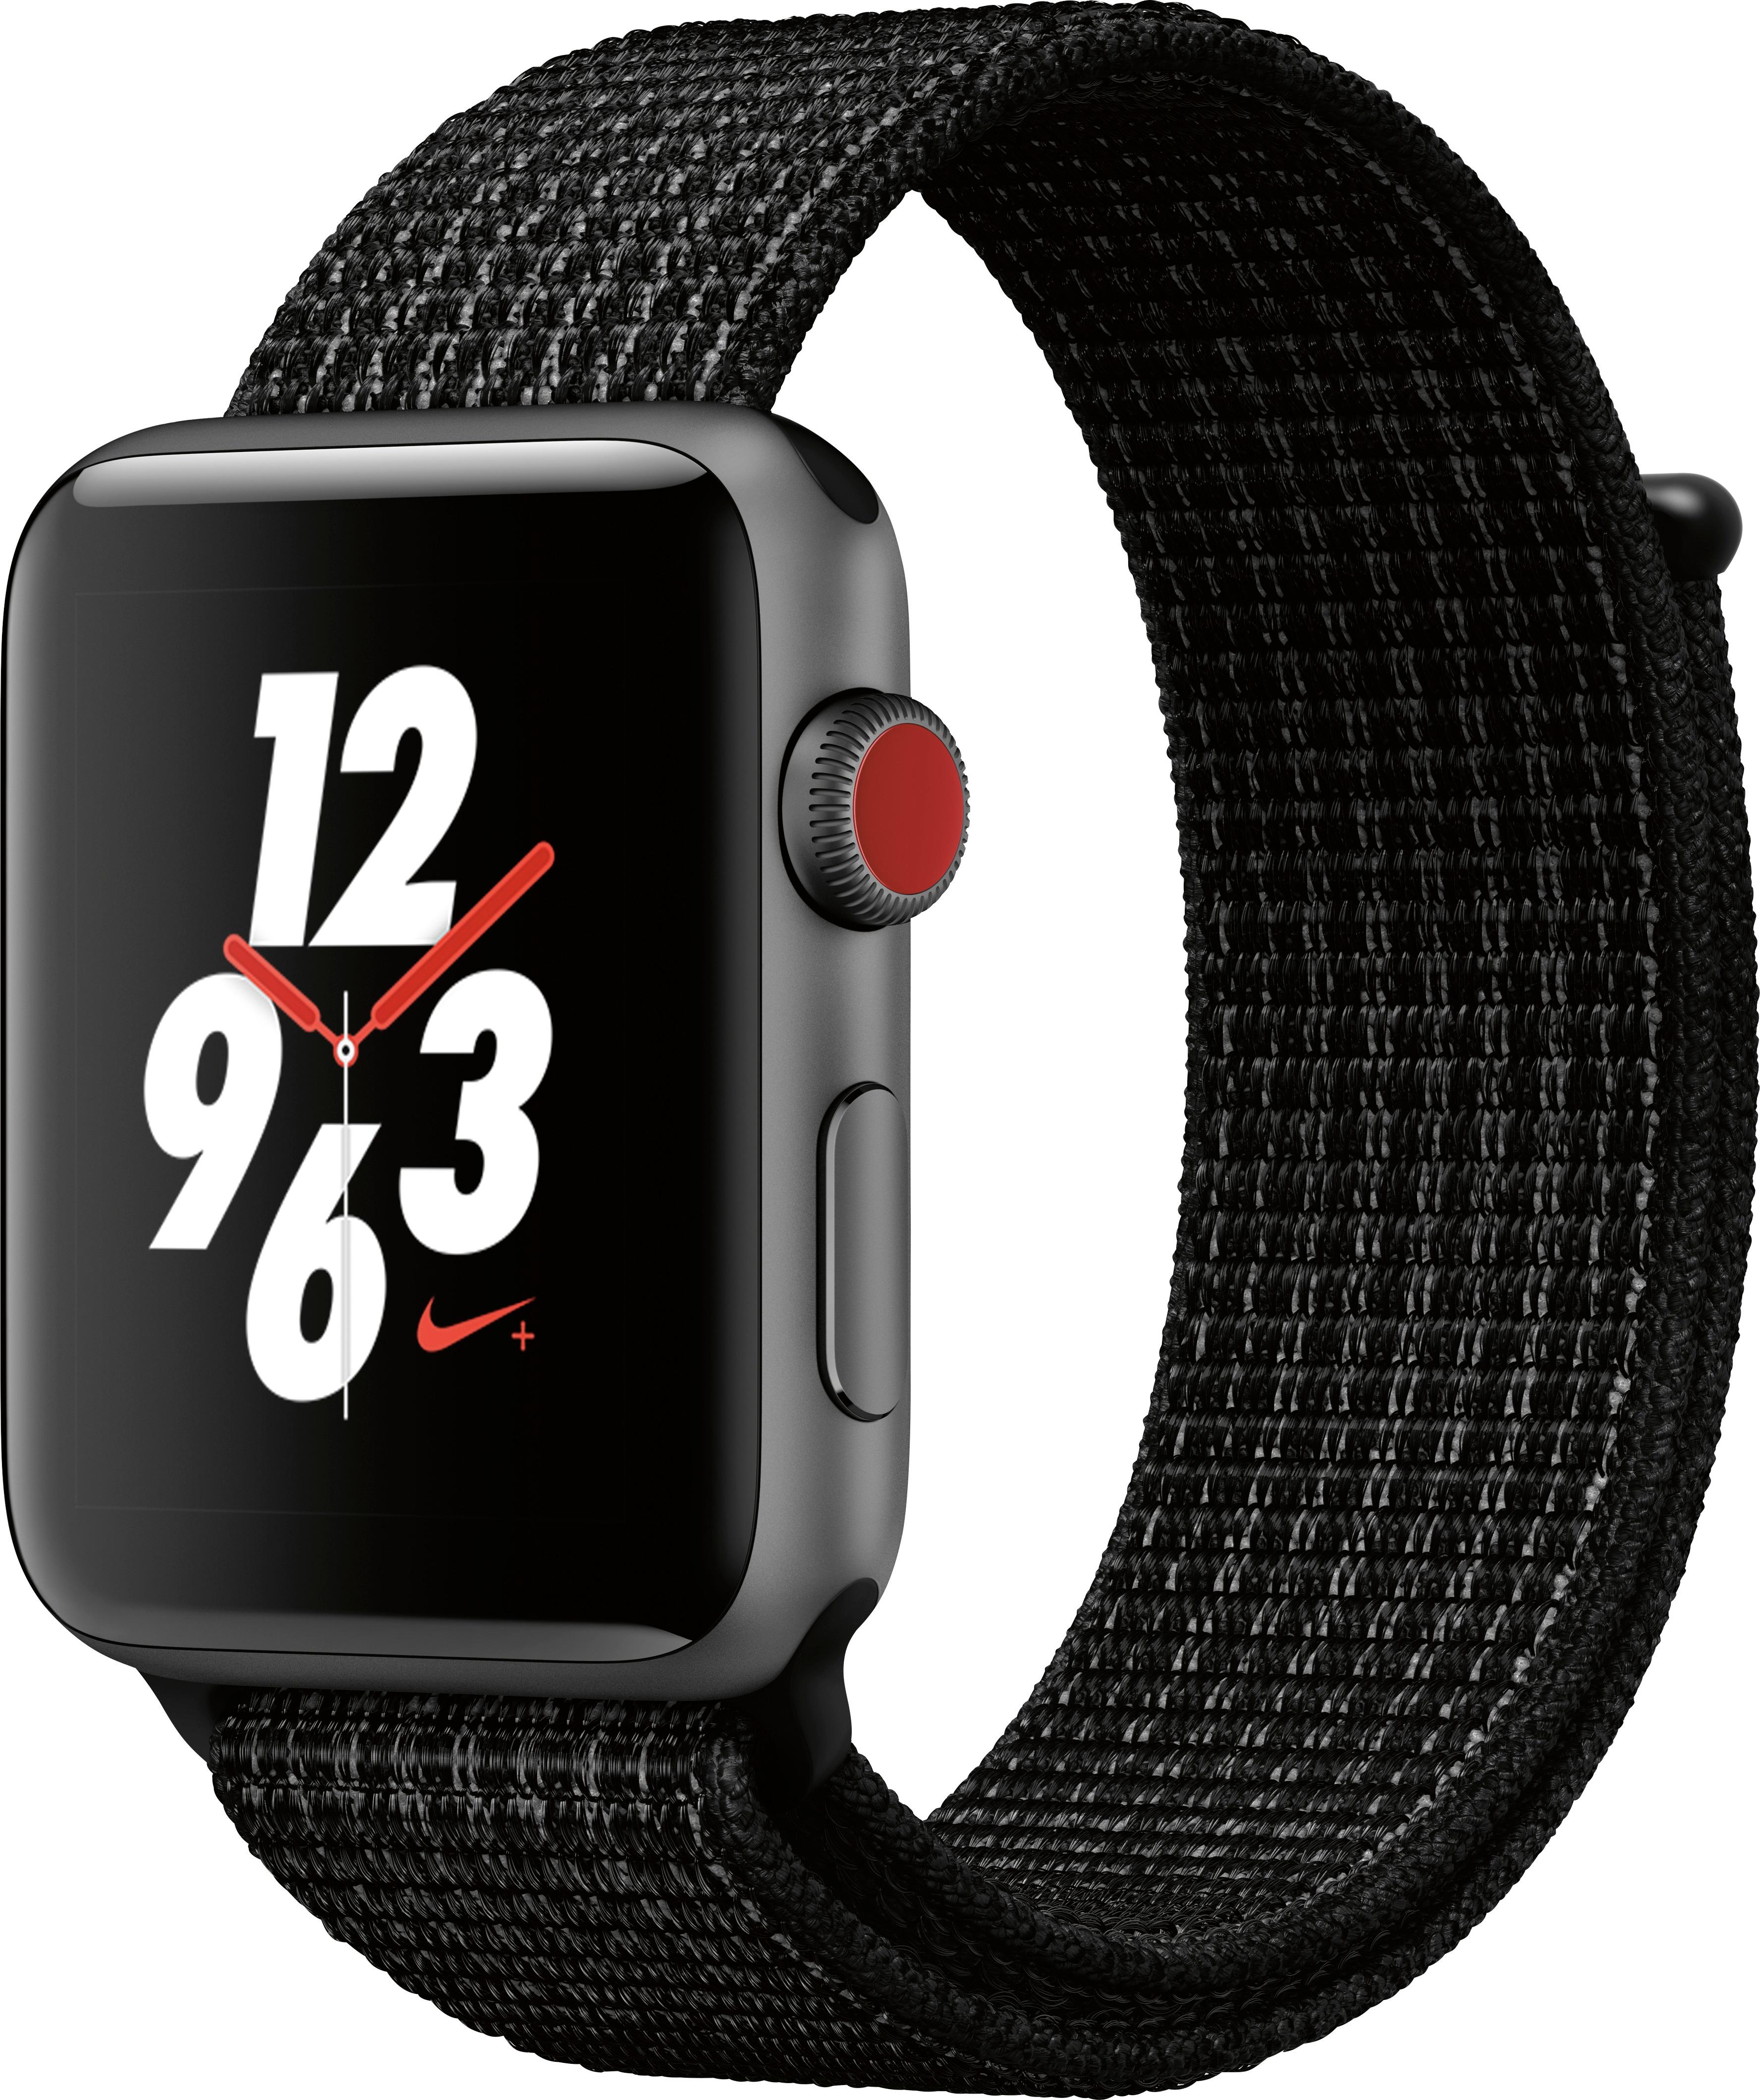 Nike Serie 3 Apple Watch Clearance, 54% OFF | www 